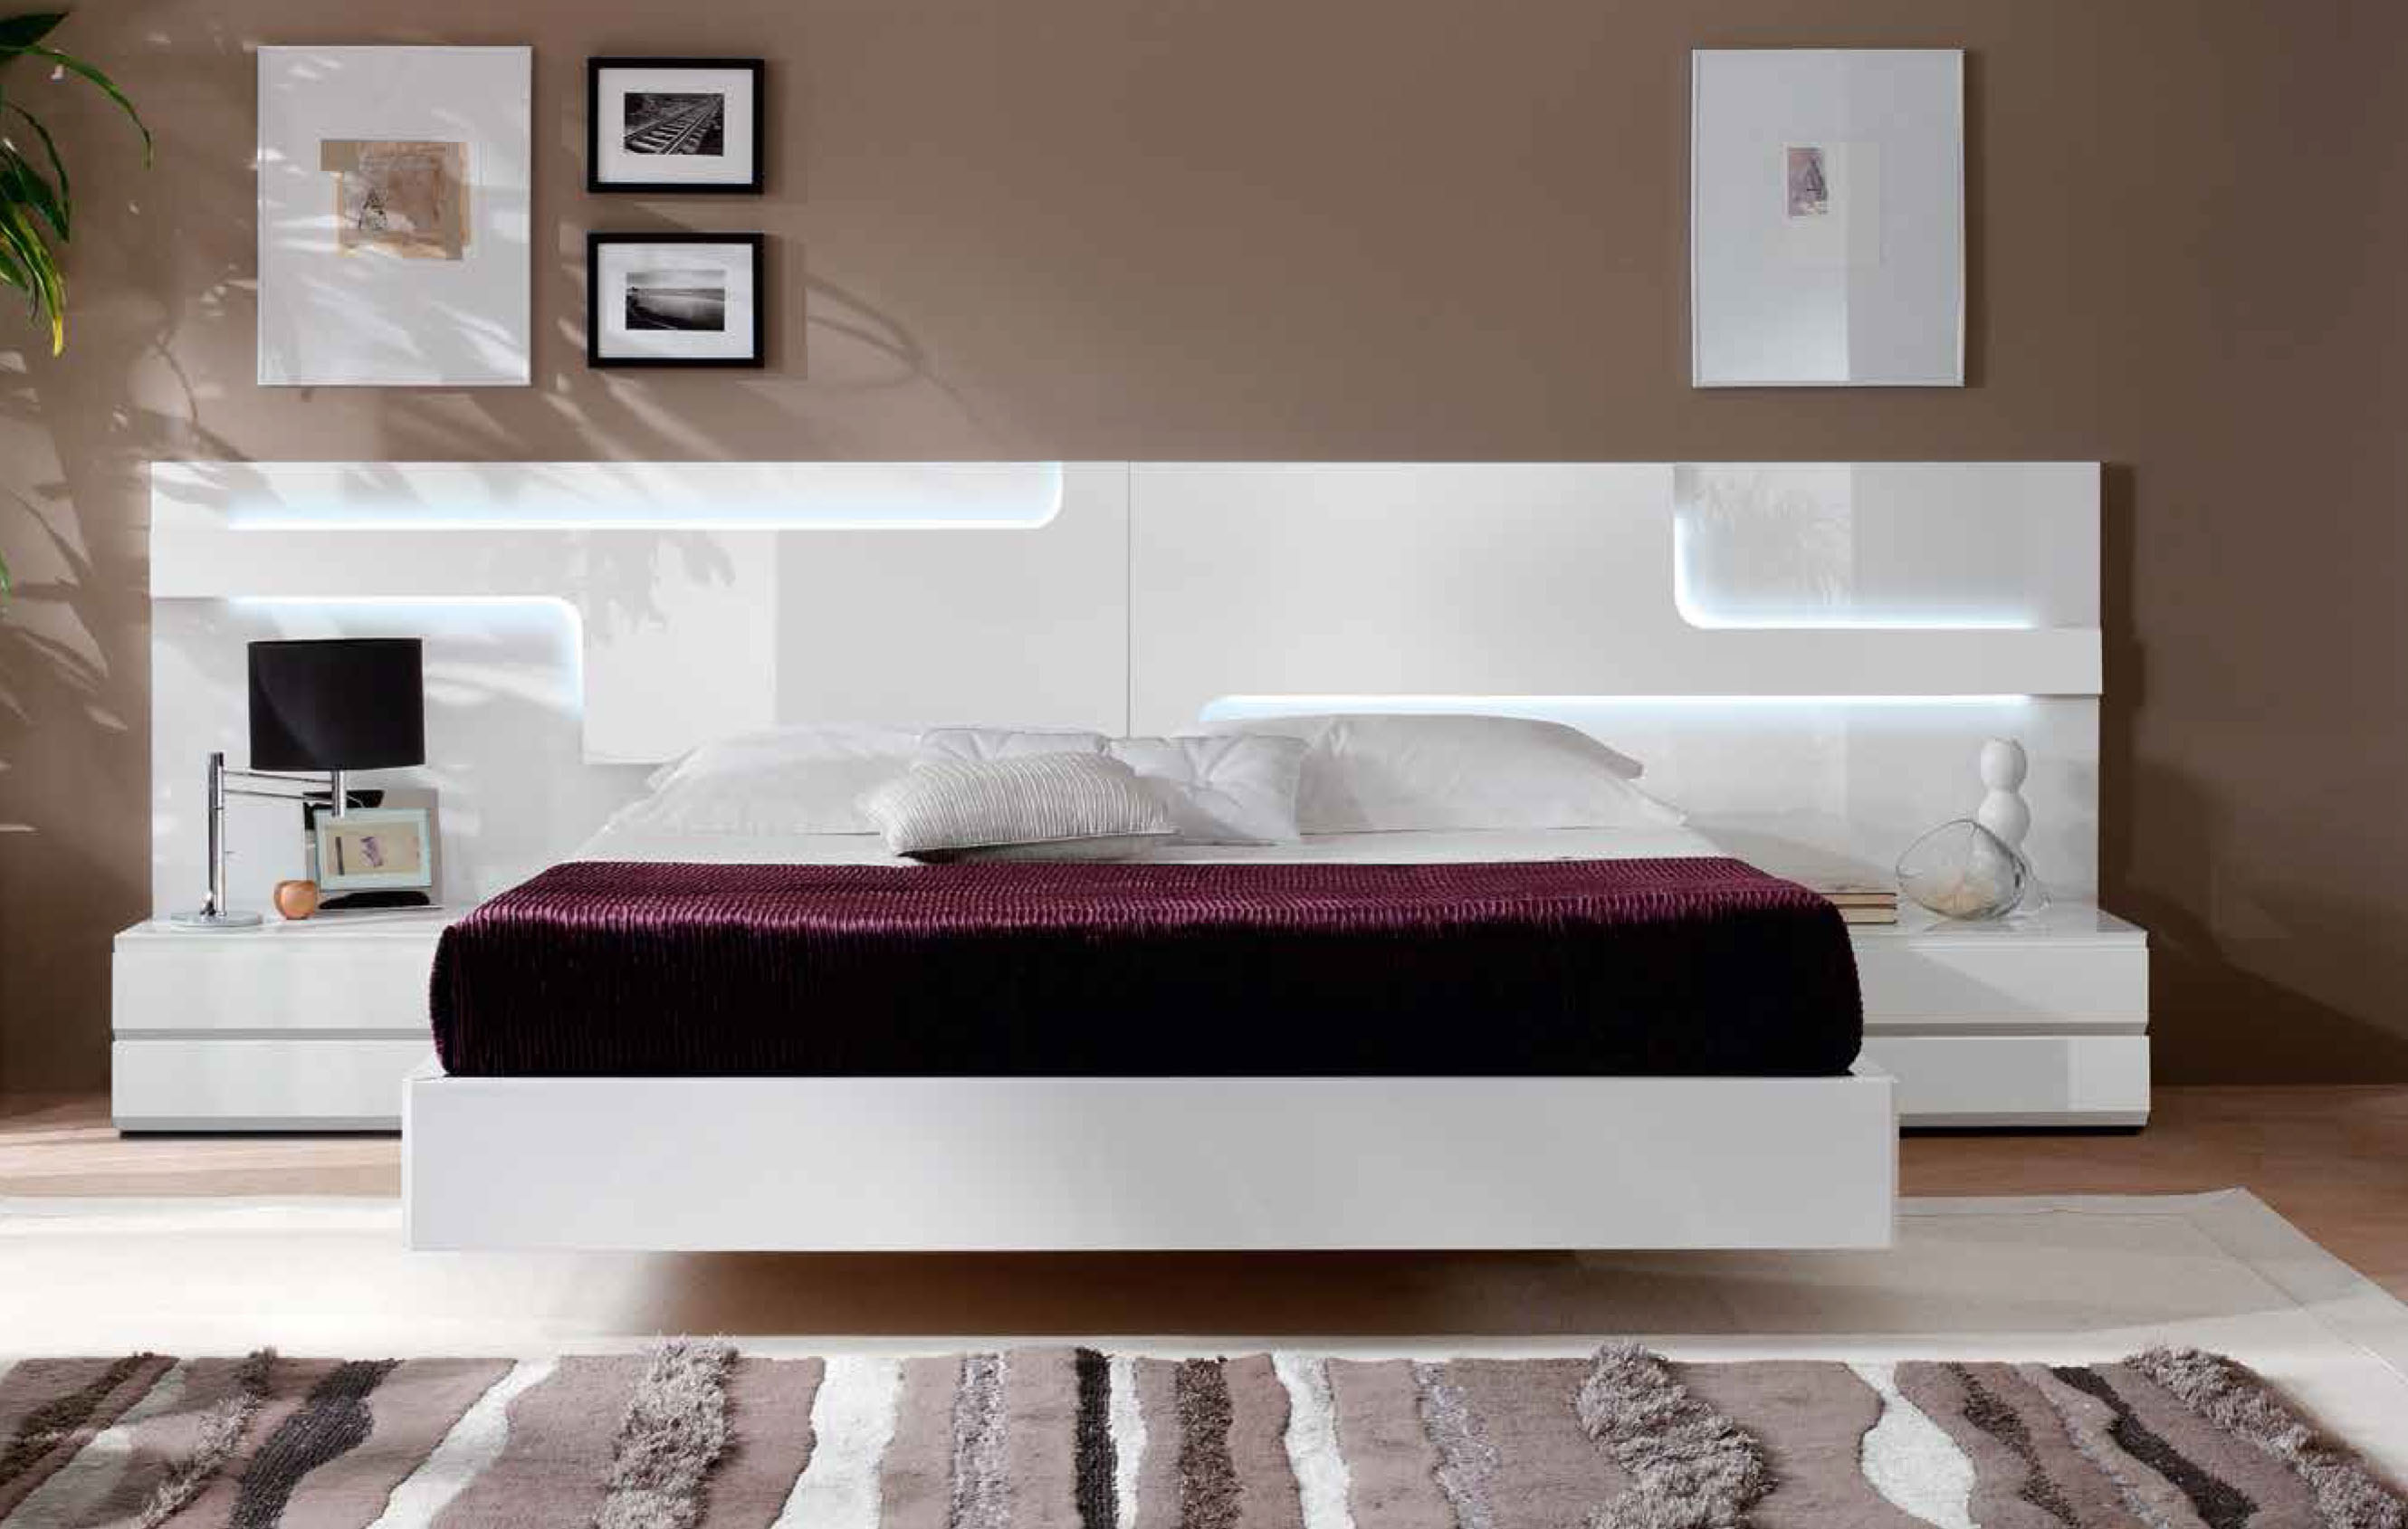 gc506-spain-white-bedroom-furniture.jpg